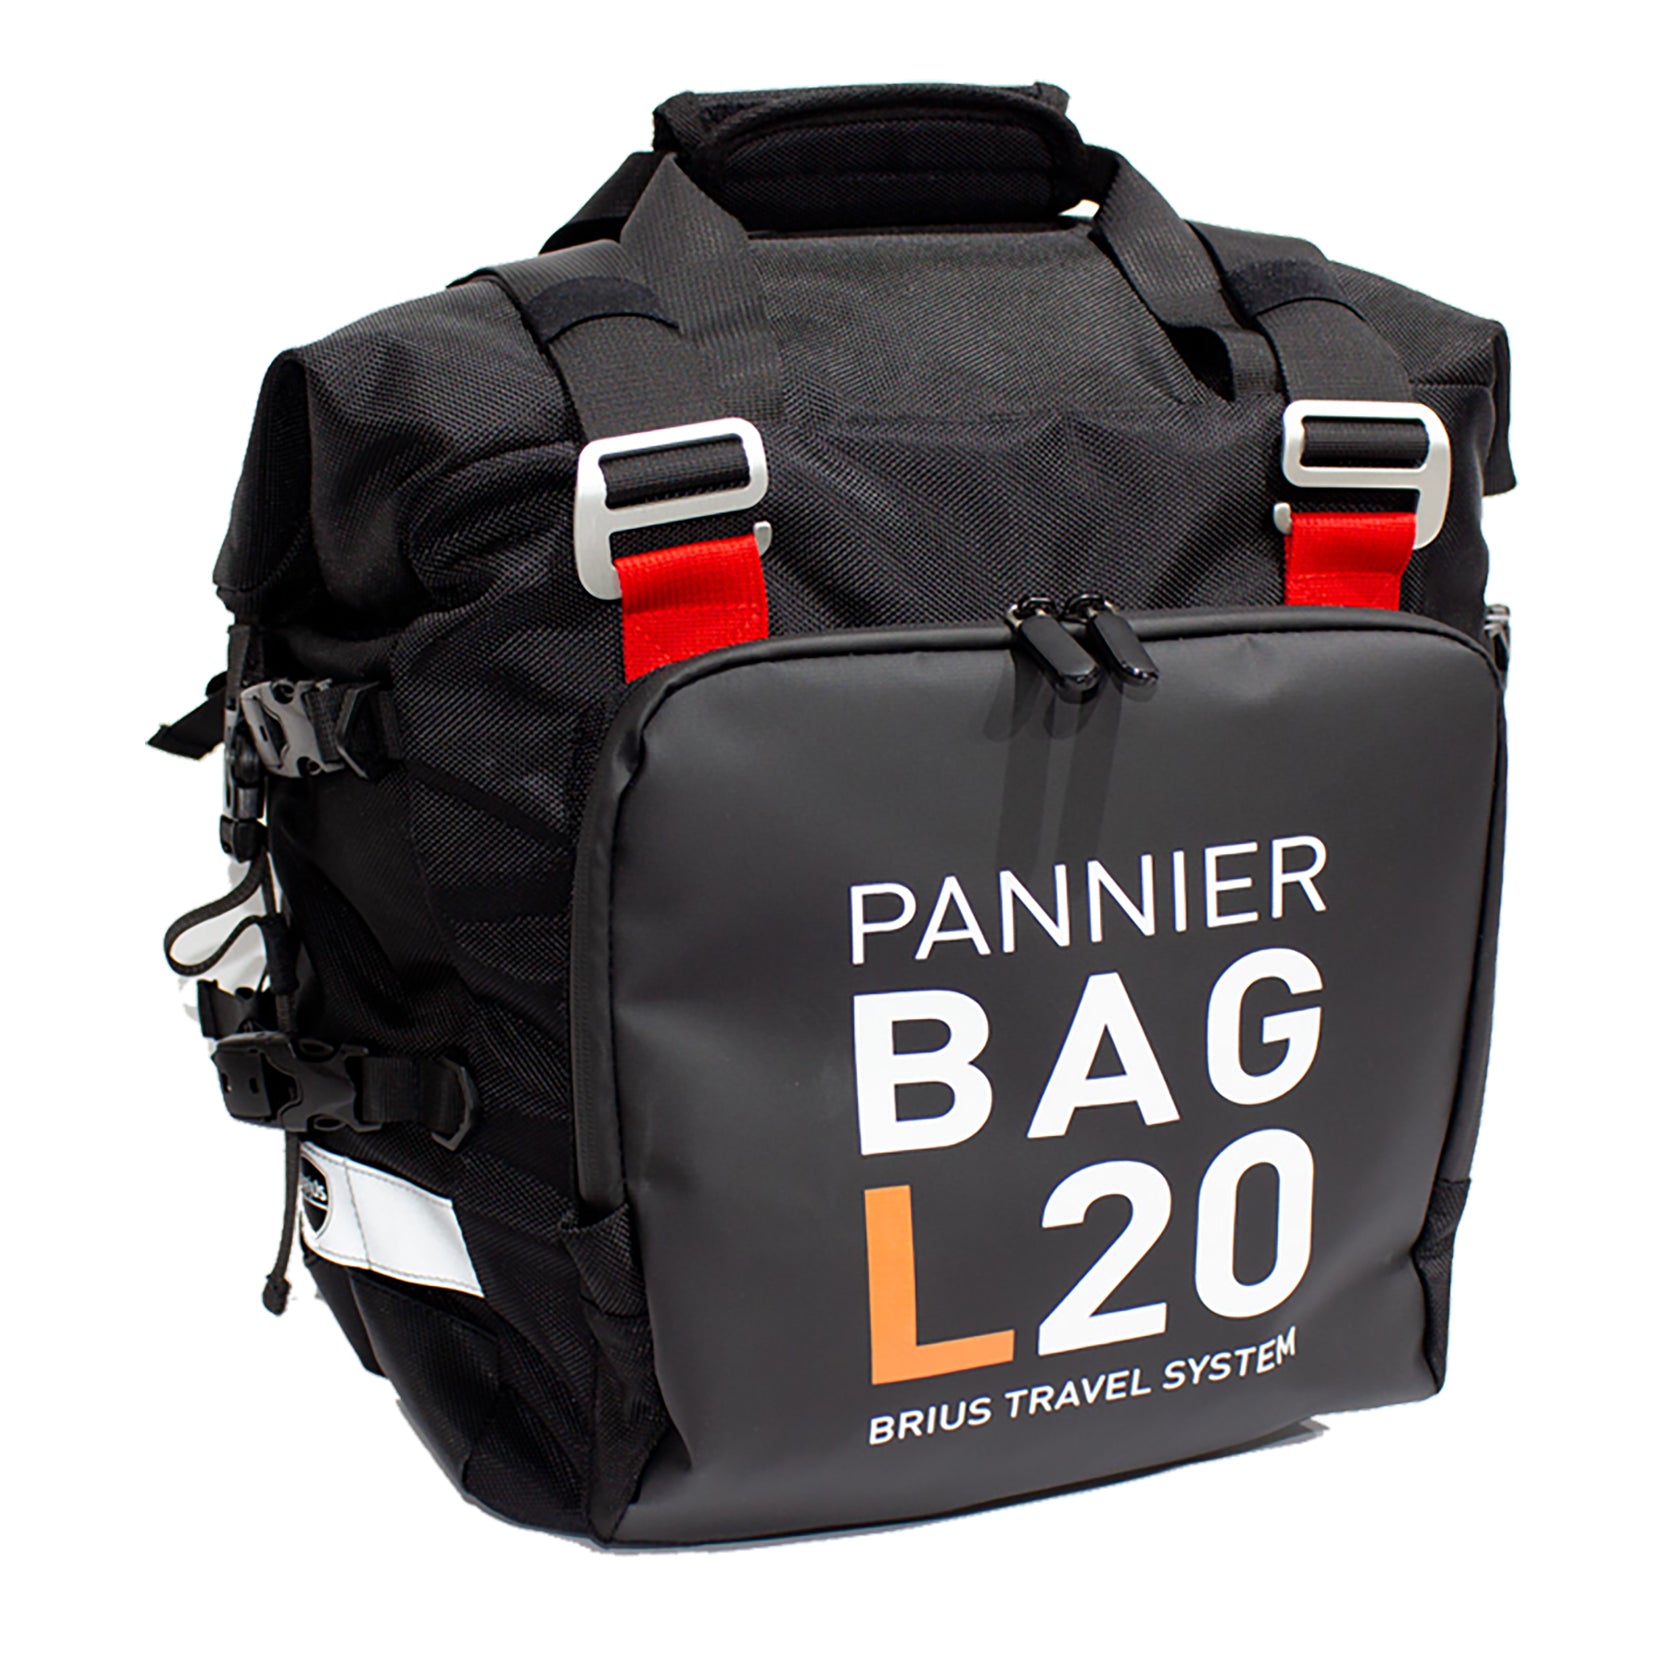 BRIUS Travel System PANNIER BAG L20